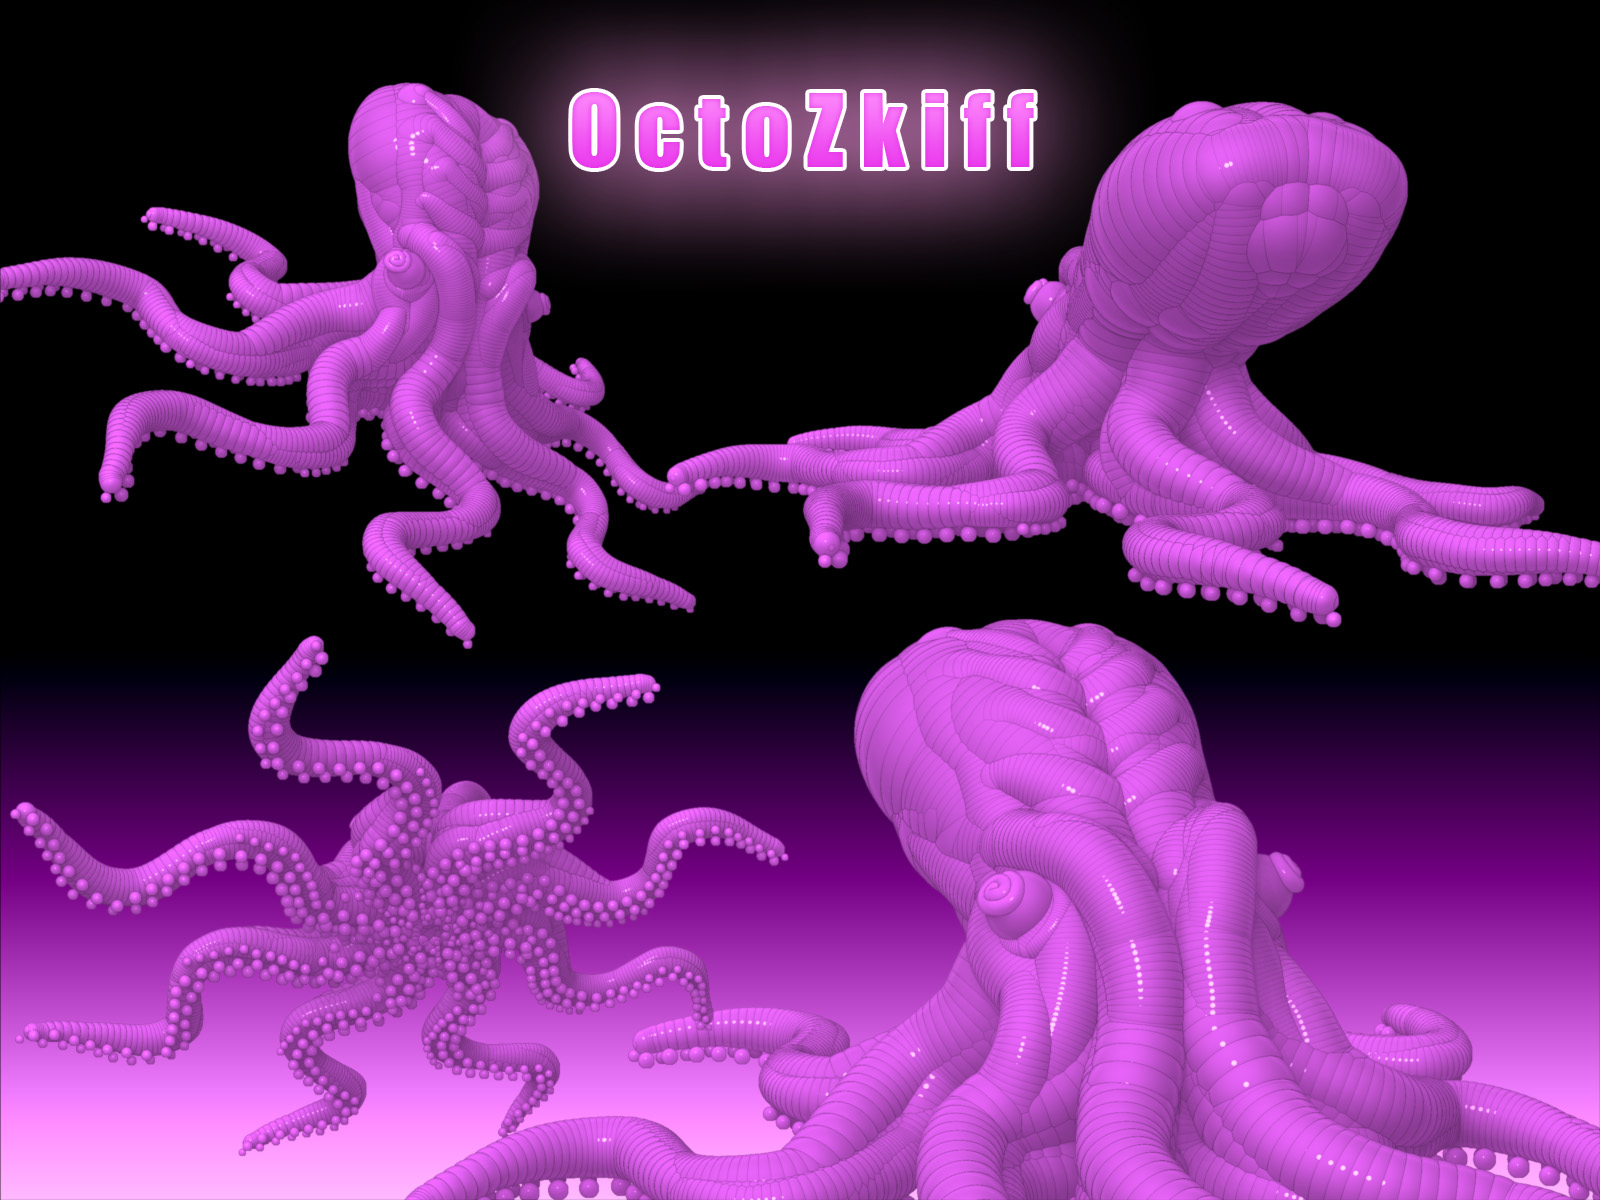 Octopuss Render.jpg